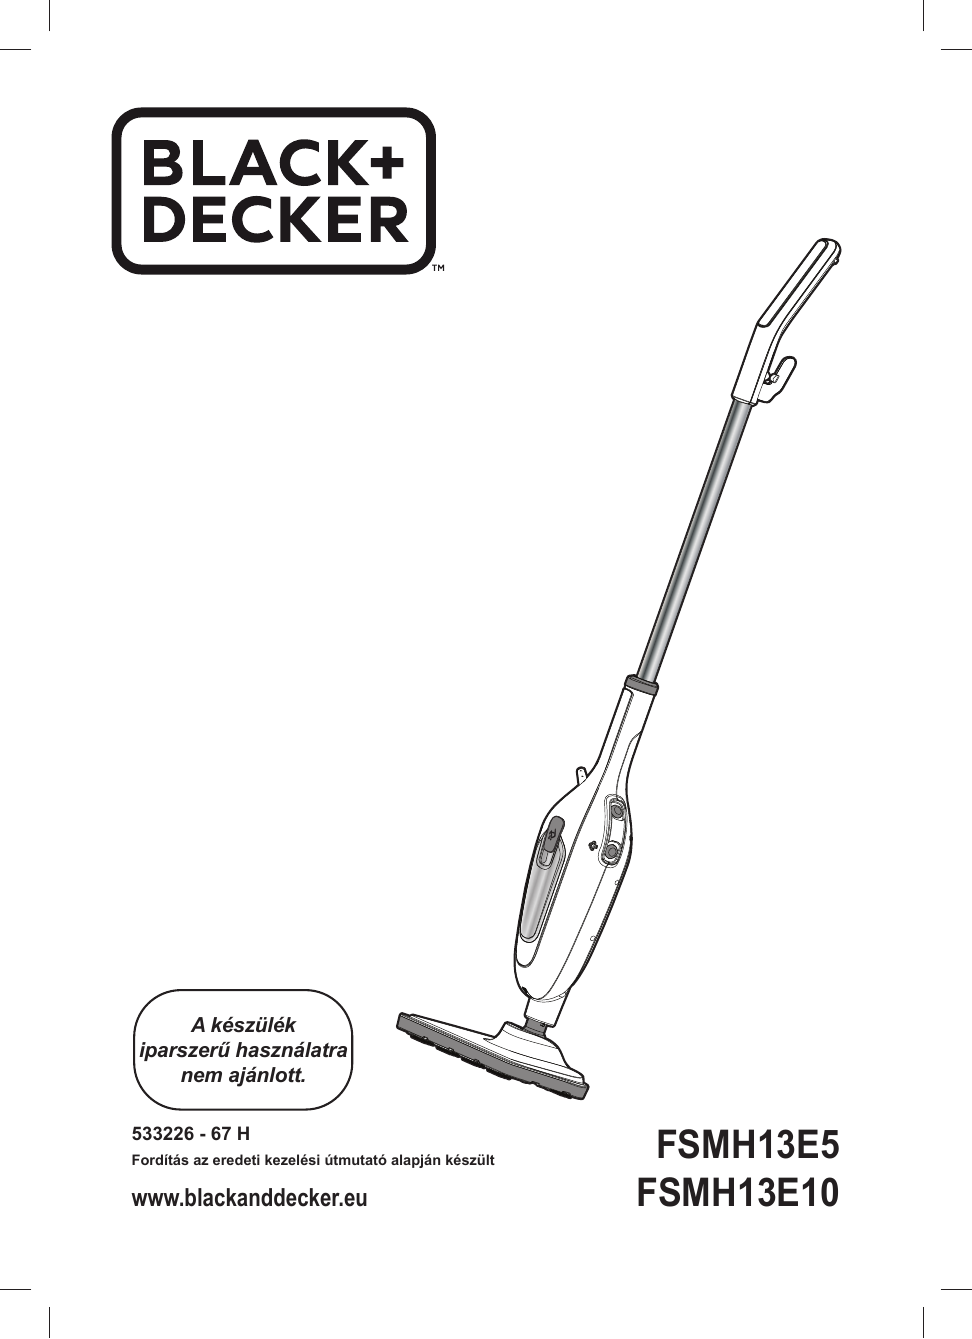 BLACK+DECKER FSMH13E10 Steam mop Instruction Manual